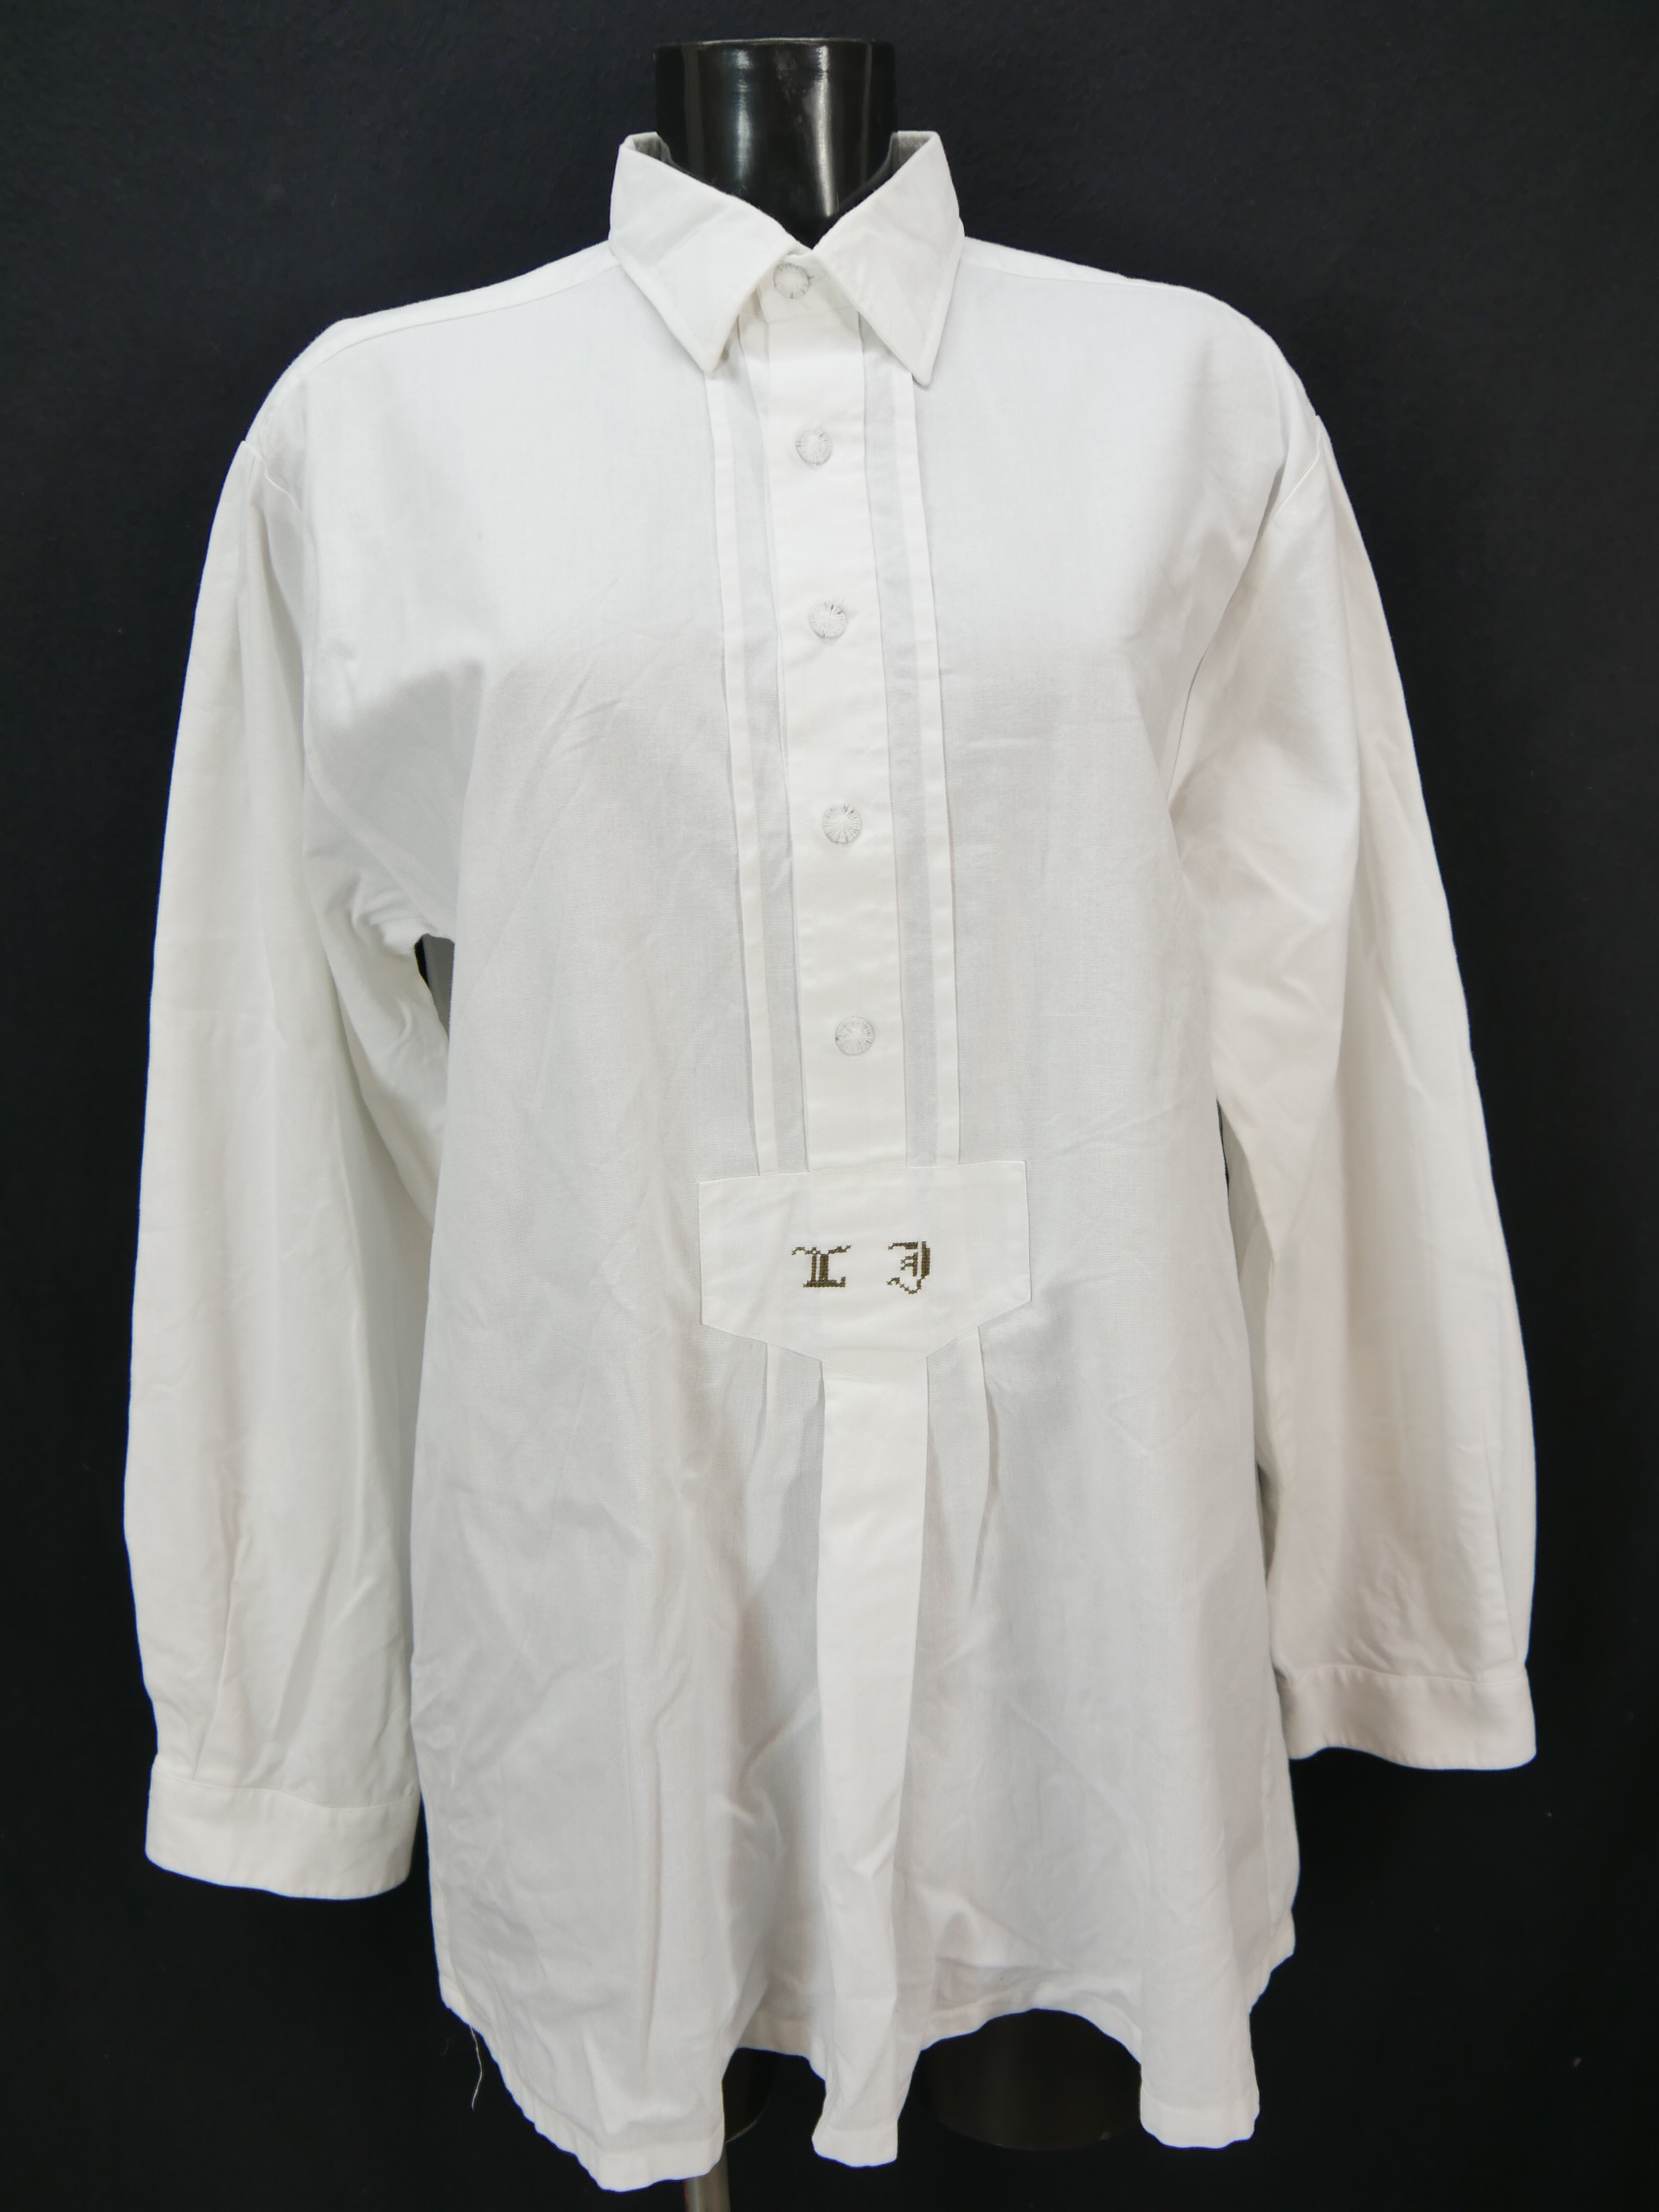 Gr.L Trachtenhemd Baumwolle weiß mit Buchstaben Stickerei klasse Hemd TH2364